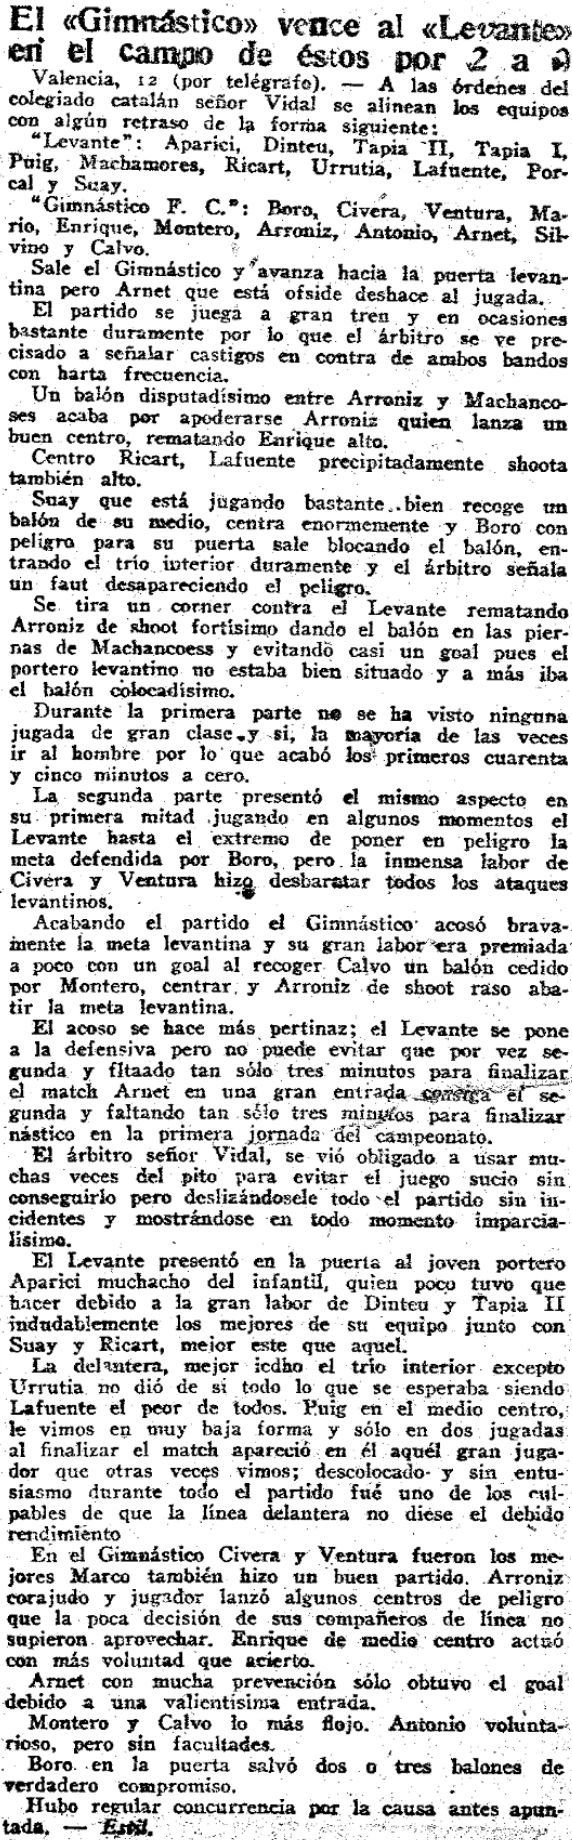 1924.10.12 (12 октября 1924), Леванте - Гимнастико, 0-2.png